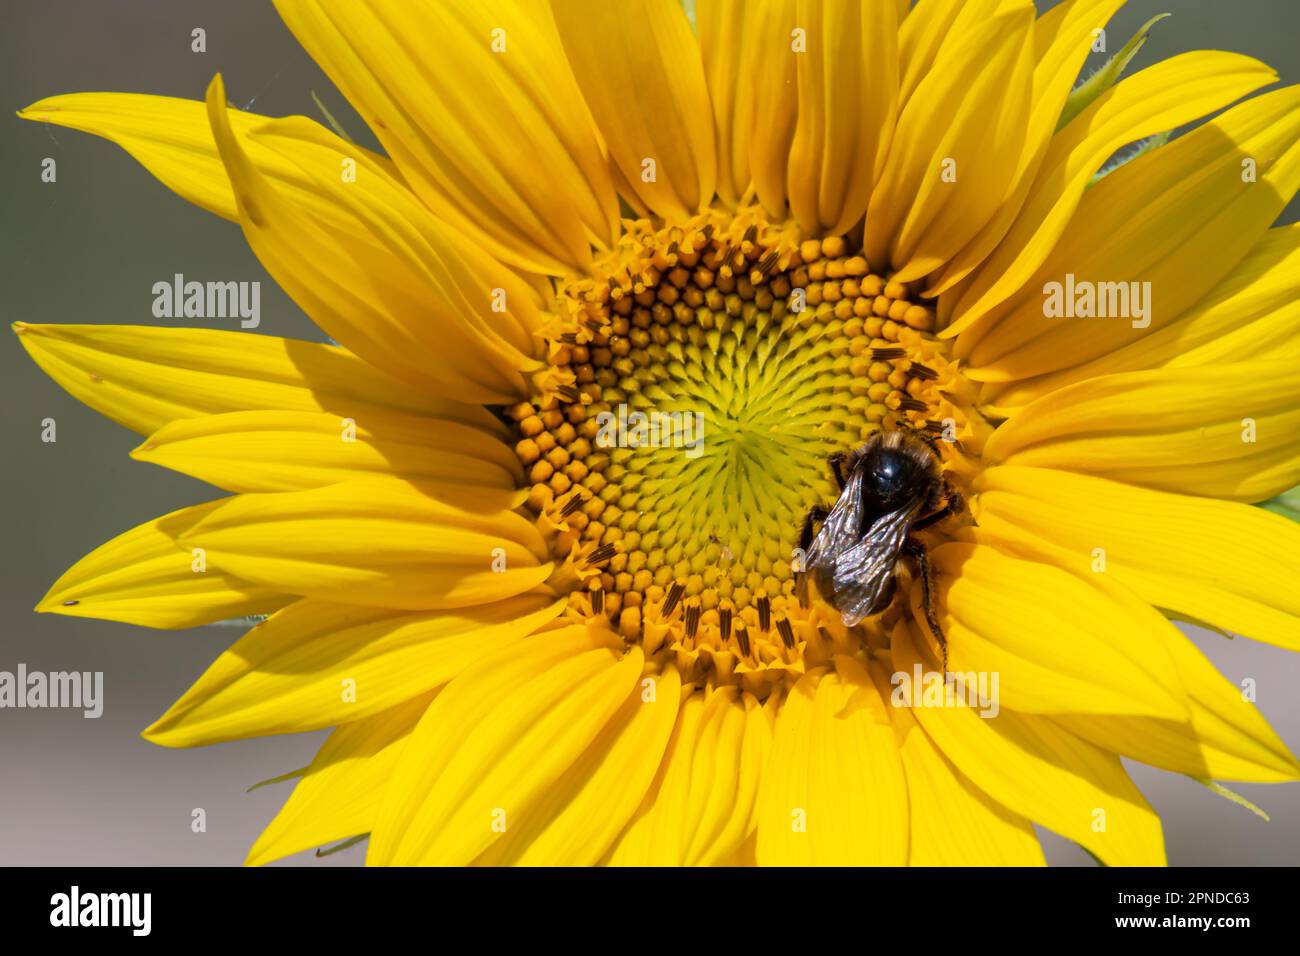 Schwarz-gelb gestreifte Biene, Honigbiene, befruchtende Sonnenblumen, Nahaufnahme des einzelnen Sonnenblumenkopfes mit gelben Blütenblättern und schwarzen Samen Stockfoto